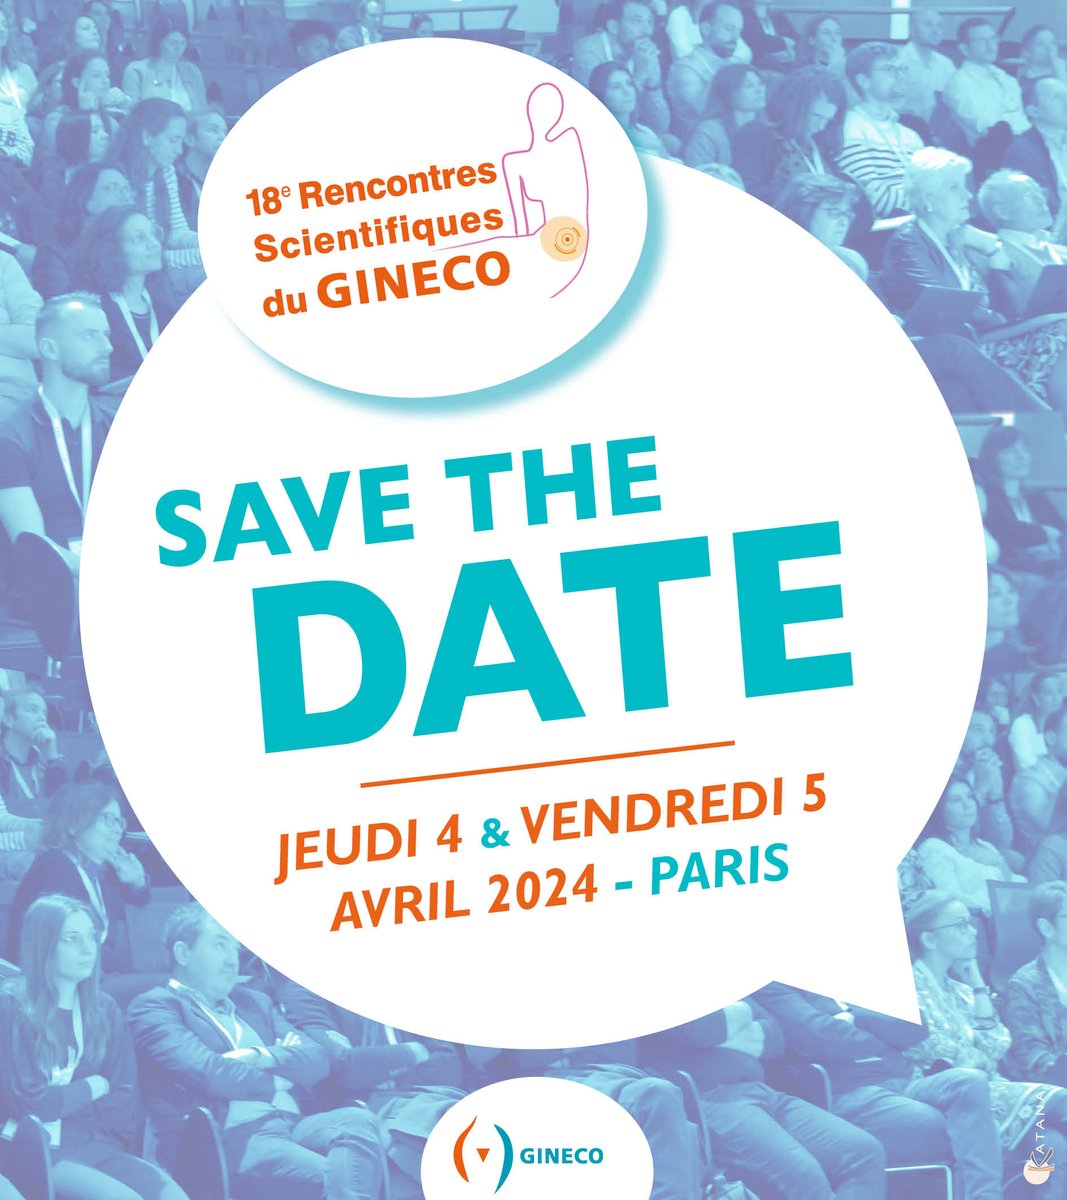 📅 Avril 4 -5, 2024| Save the date - 18èmes Rencontres Scientifiques du GINECO !

📲Restez connectés -> les inscriptions seront très prochainement disponibles.

#rechercheclinique #oncologie